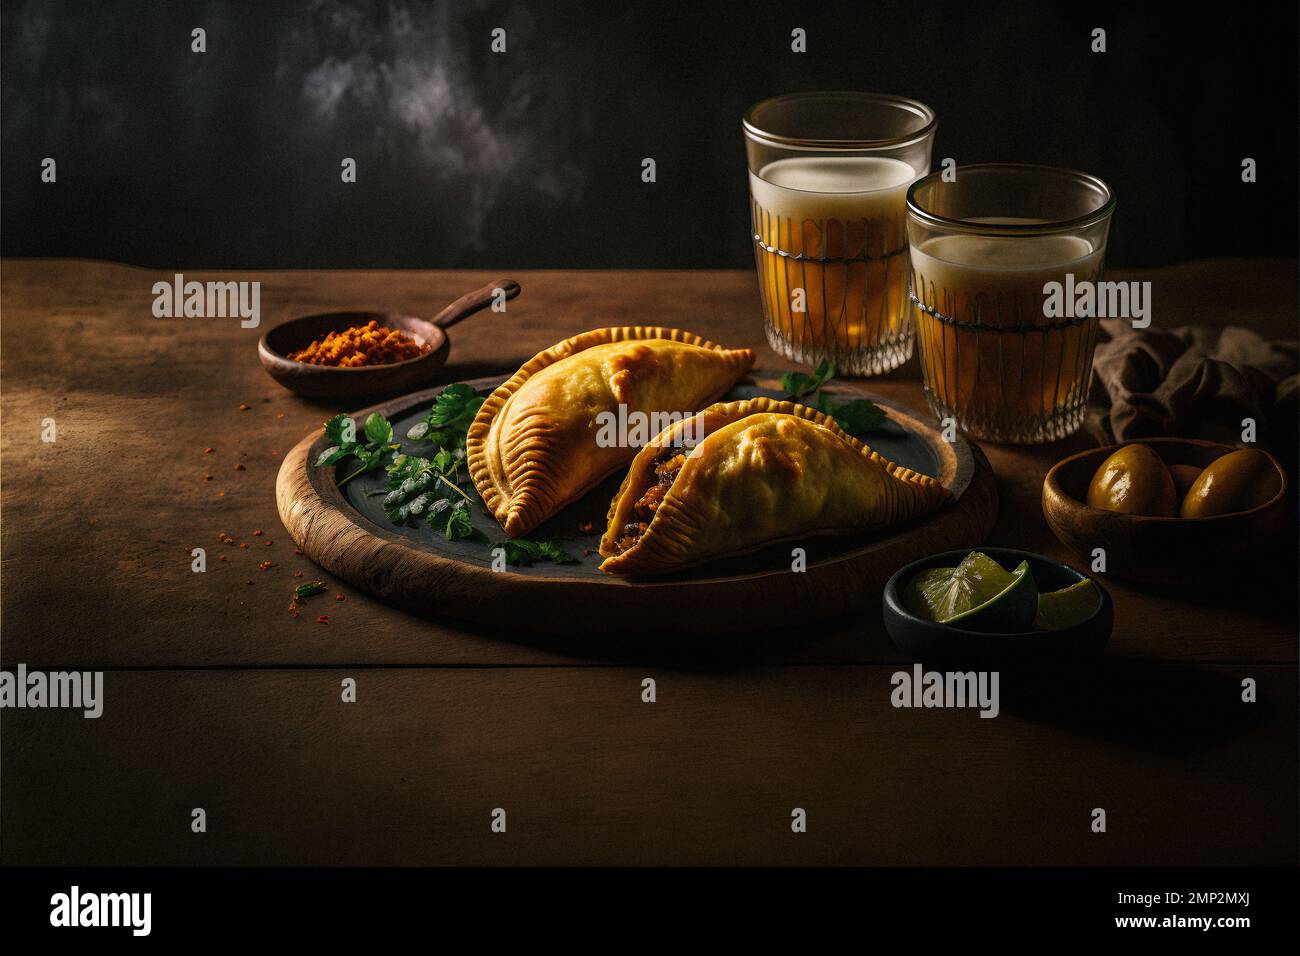 Concedetevi i ricchi sapori dell'America Latina con la nostra collezione di fotografia enogastronomica Empanadas. Immagini appetitose mostrano cibo tradizionale, di strada, Foto Stock